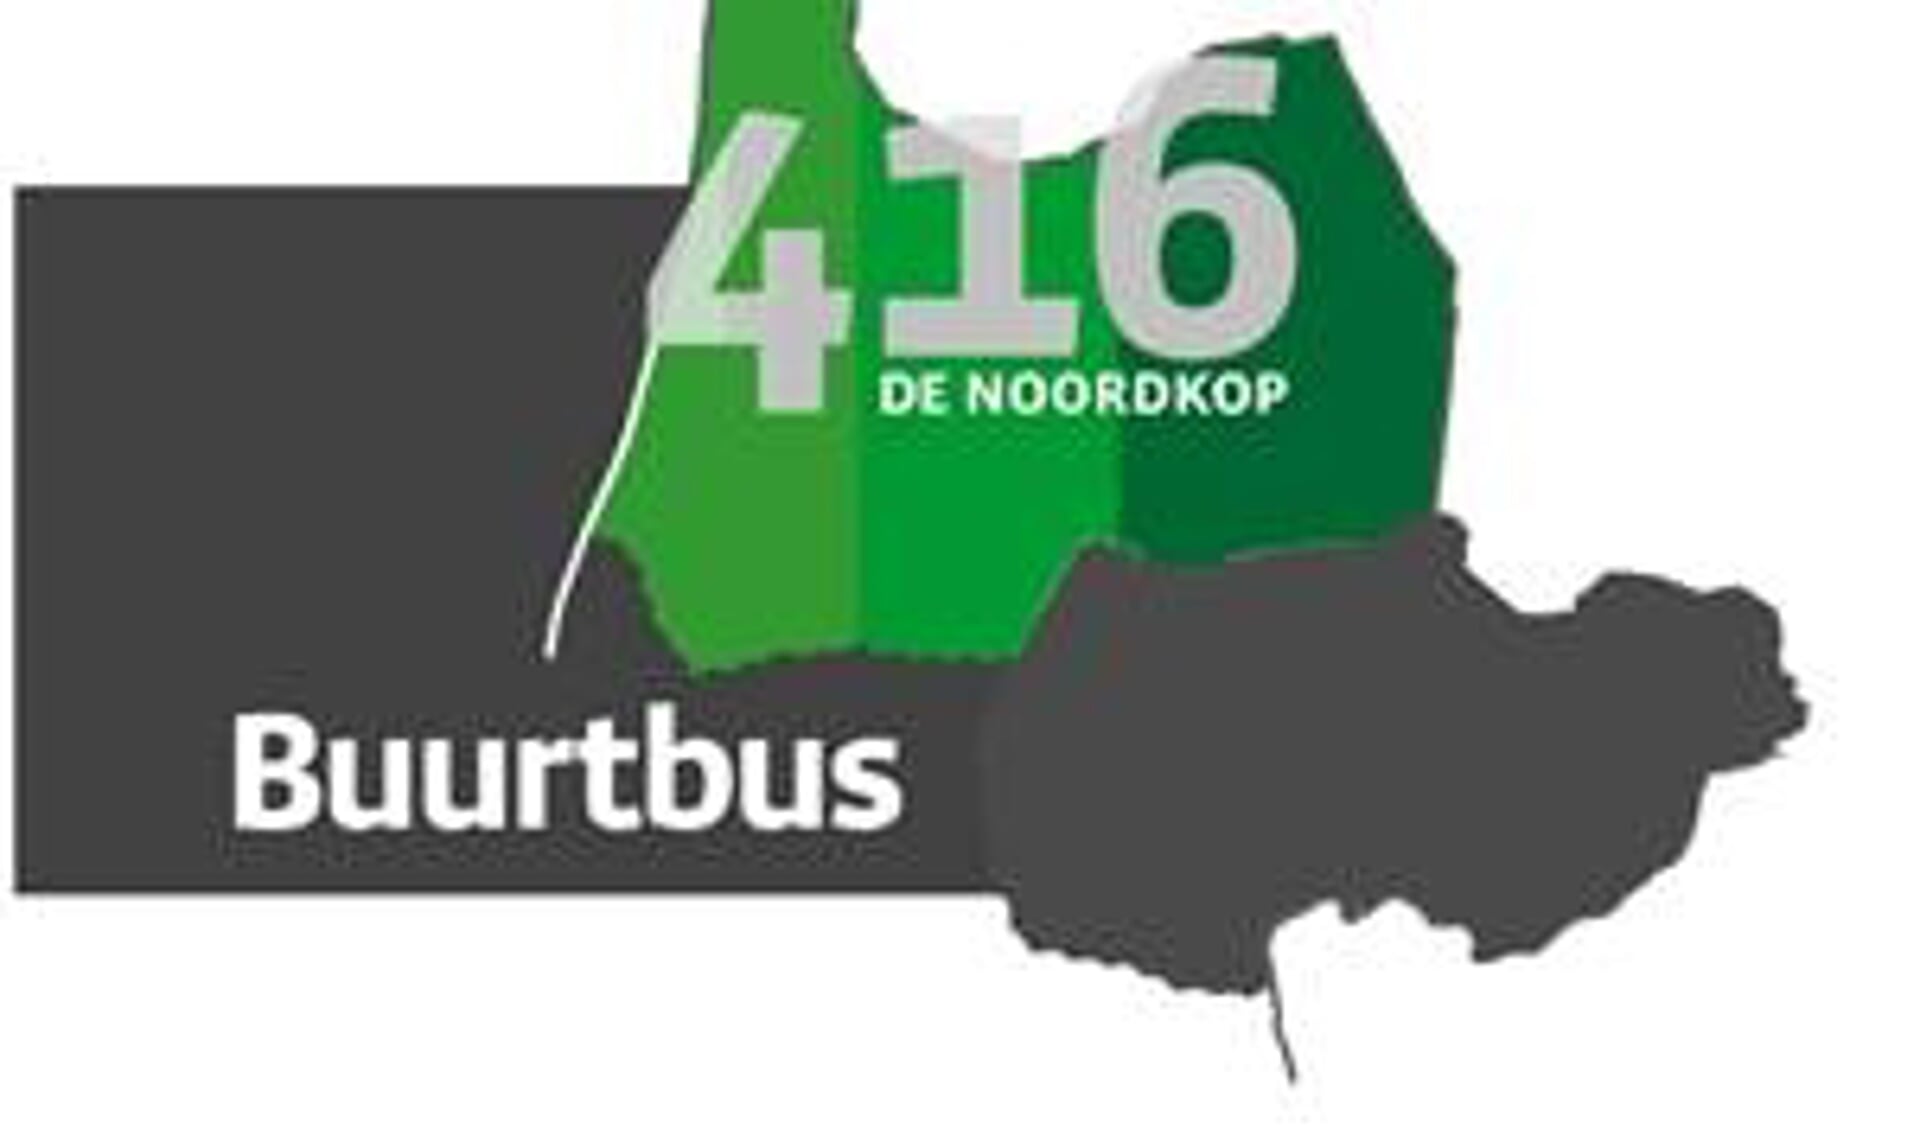 Buurtbus 416 rijdt tijdelijk niet op zaterdag.